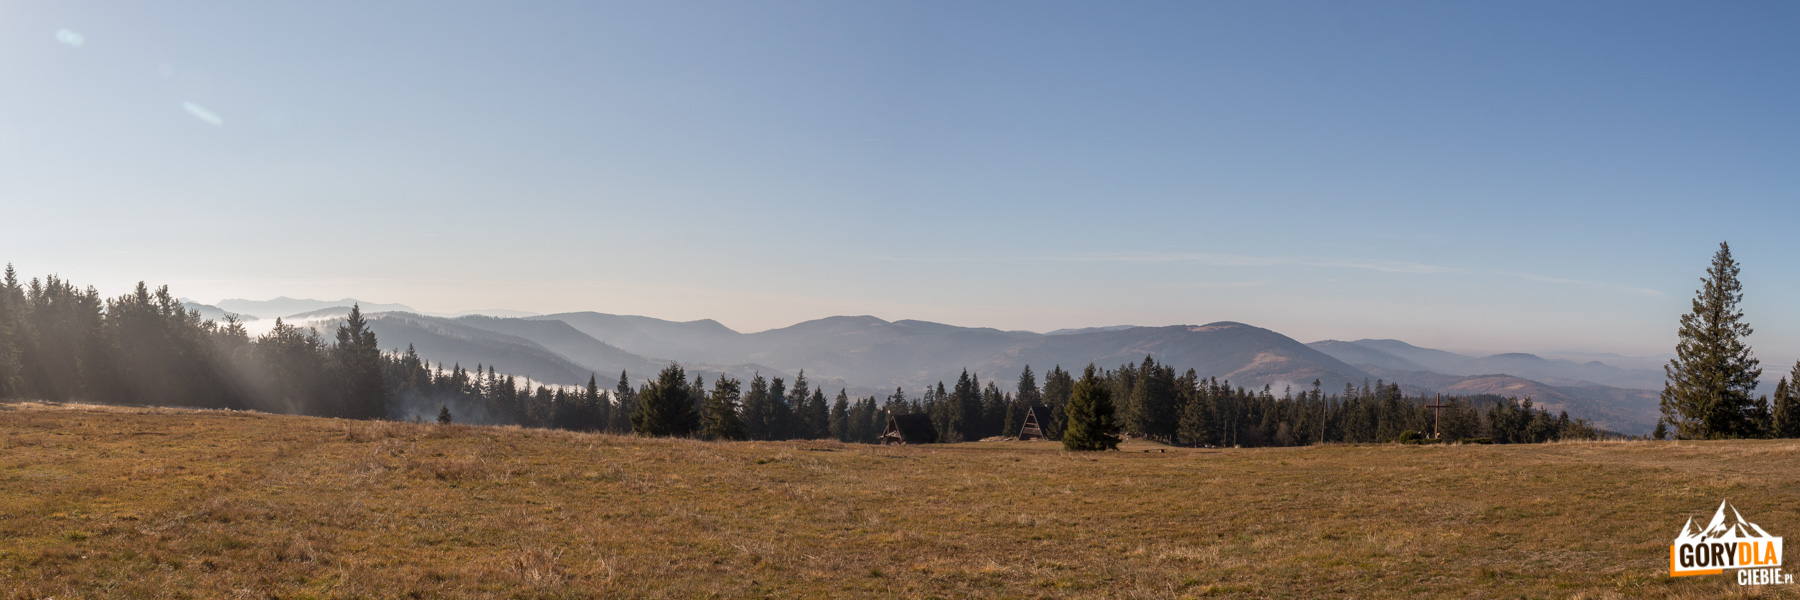 Panorama z górnej części Hali Krawcula: od lewej Mała Fatra, Świtkowa (1082 m), Rycerzowa Wielka (1226 m) i Rycerzowa Mała (1207 m), Wielka Racza (1236 m), Muńcuł (1165 m), Praszywka Wielka (1043 m), Magura (1073 m), Oźna (952 m), Rochowiec (954 m) i Sucha Góra (1040 m), a na hali szałas, Bacówka PTTK i krzyż